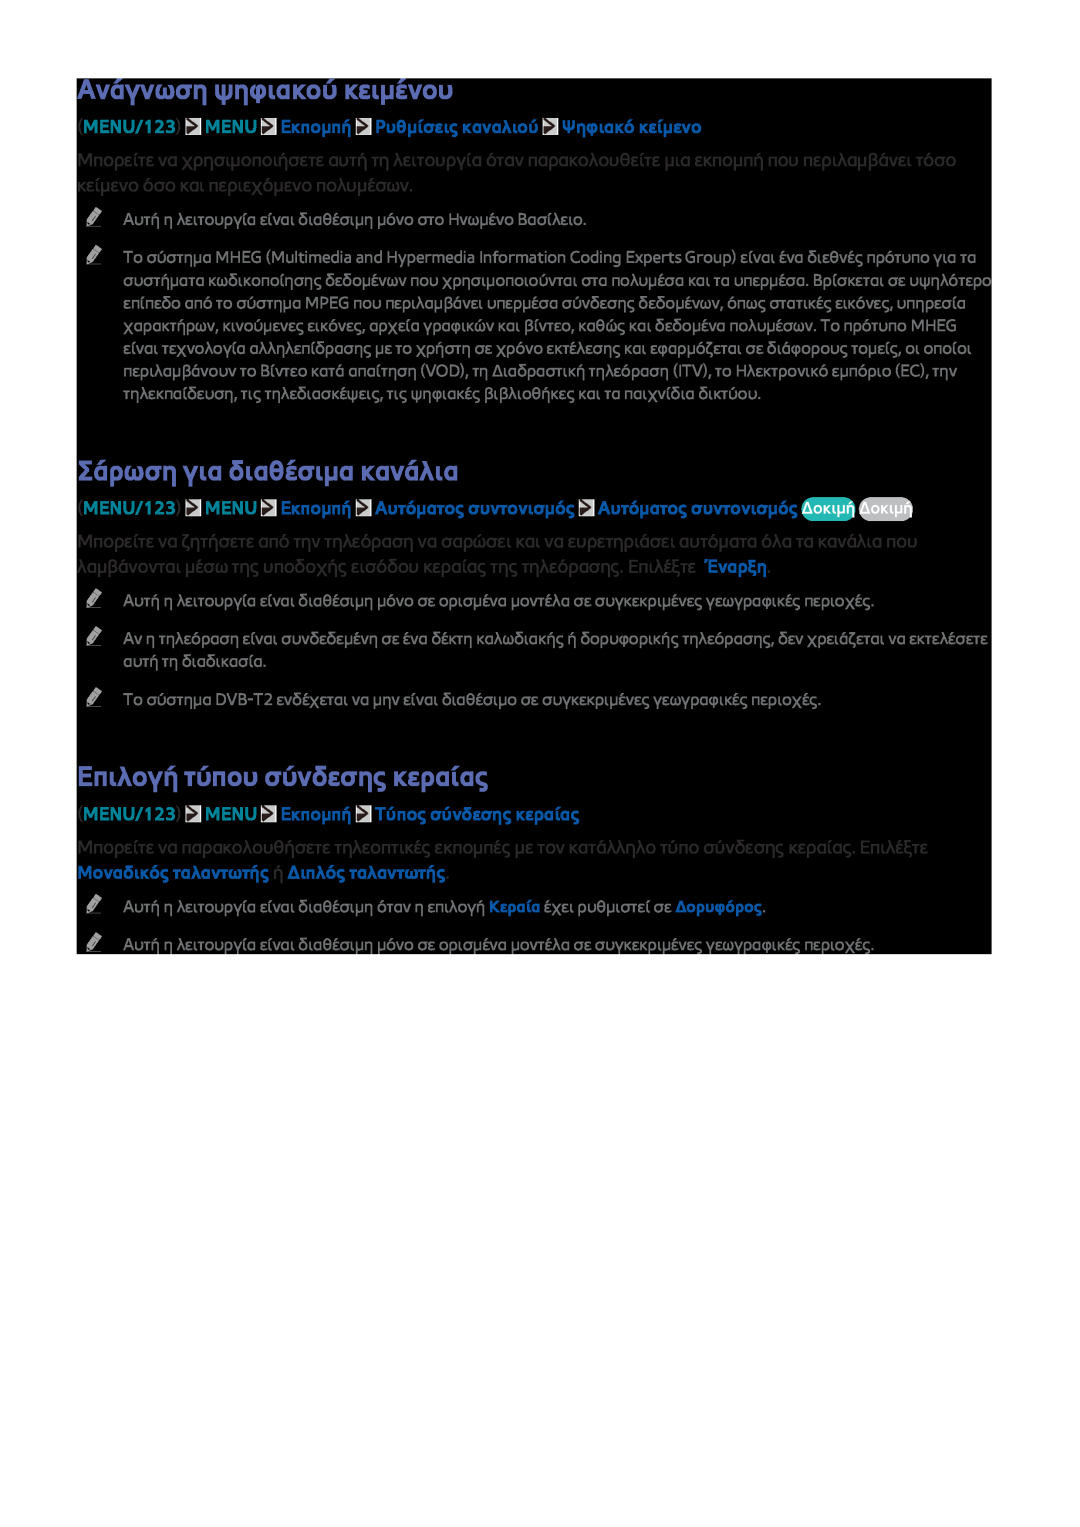 Samsung UE40J6240AWXXH manual Ανάγνωση ψηφιακού κειμένου, Σάρωση για διαθέσιμα κανάλια, Επιλογή τύπου σύνδεσης κεραίας 